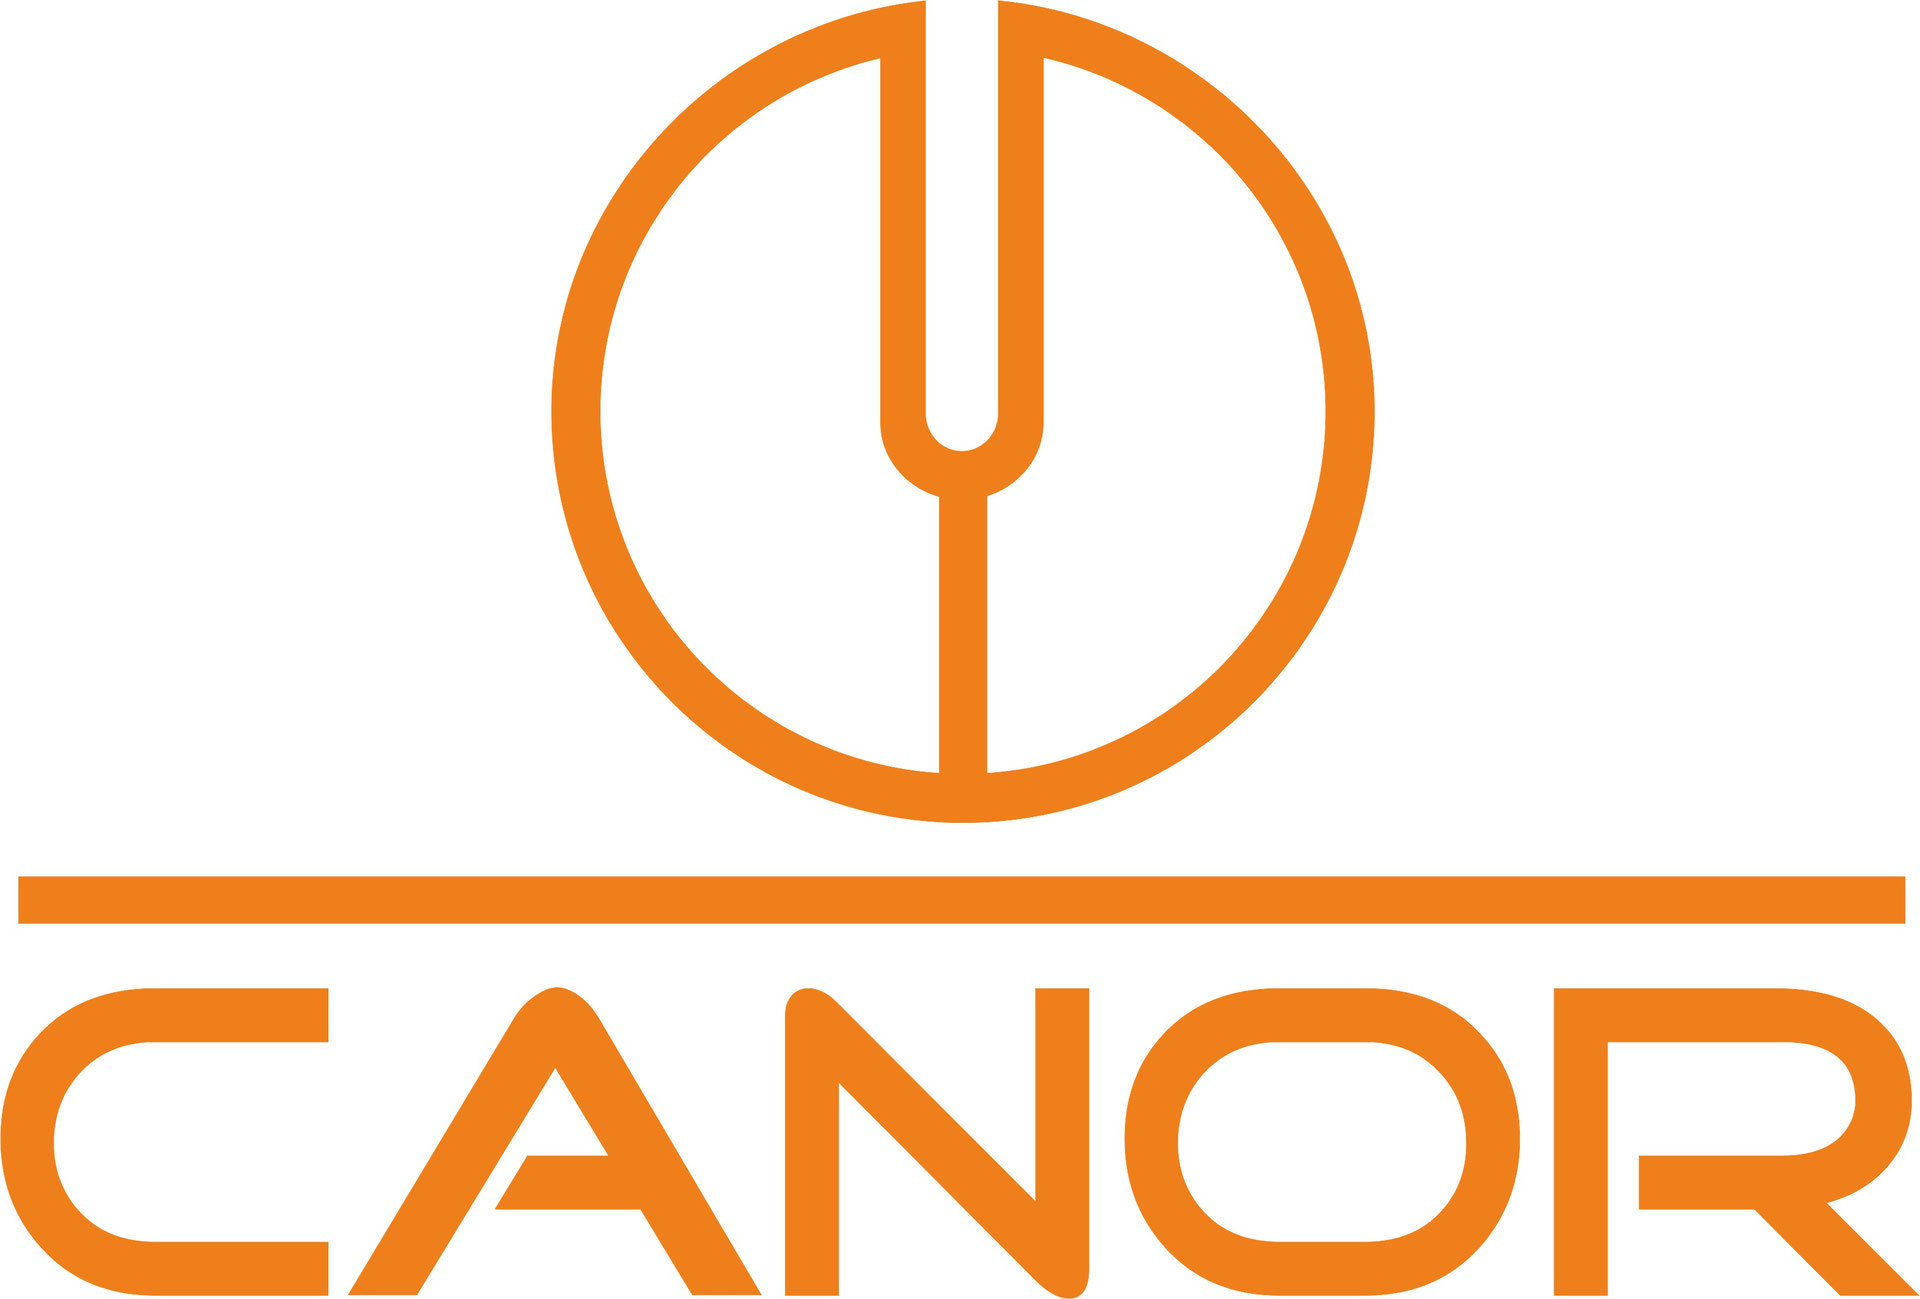 Canor Audio